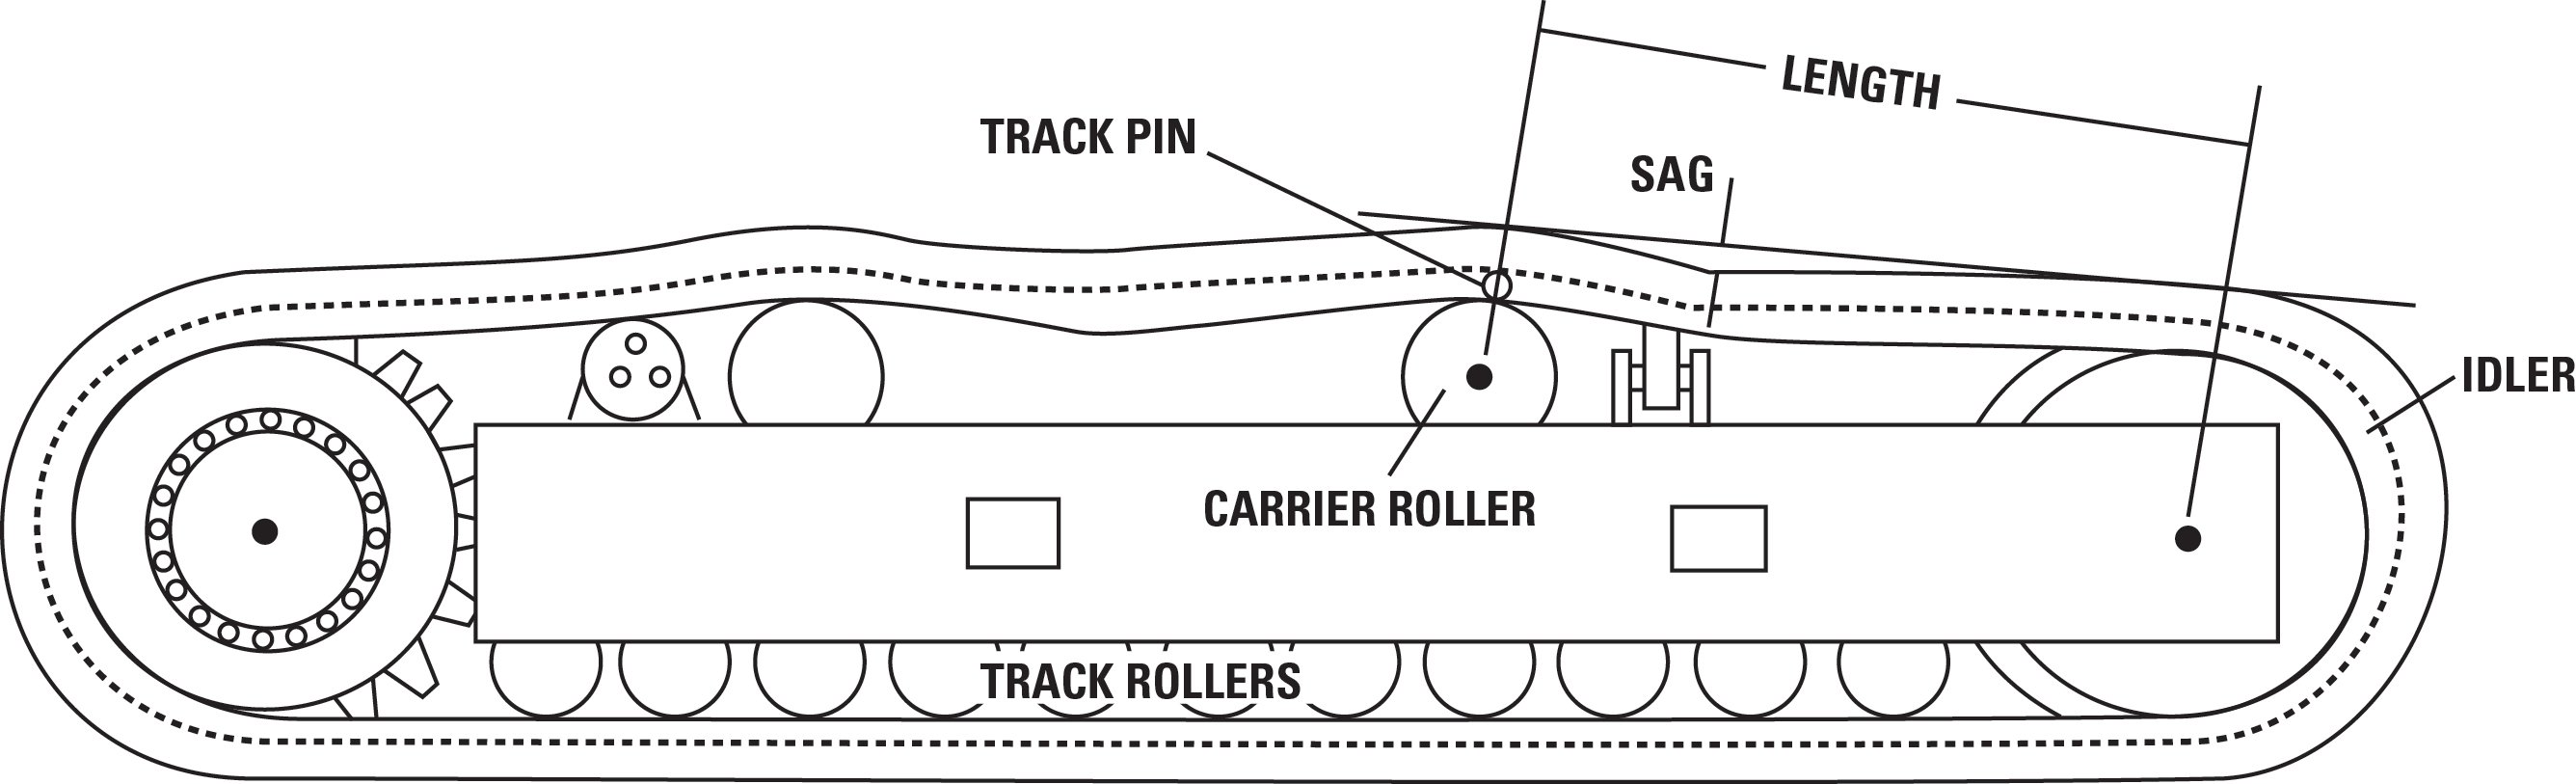 T1 - track diagram